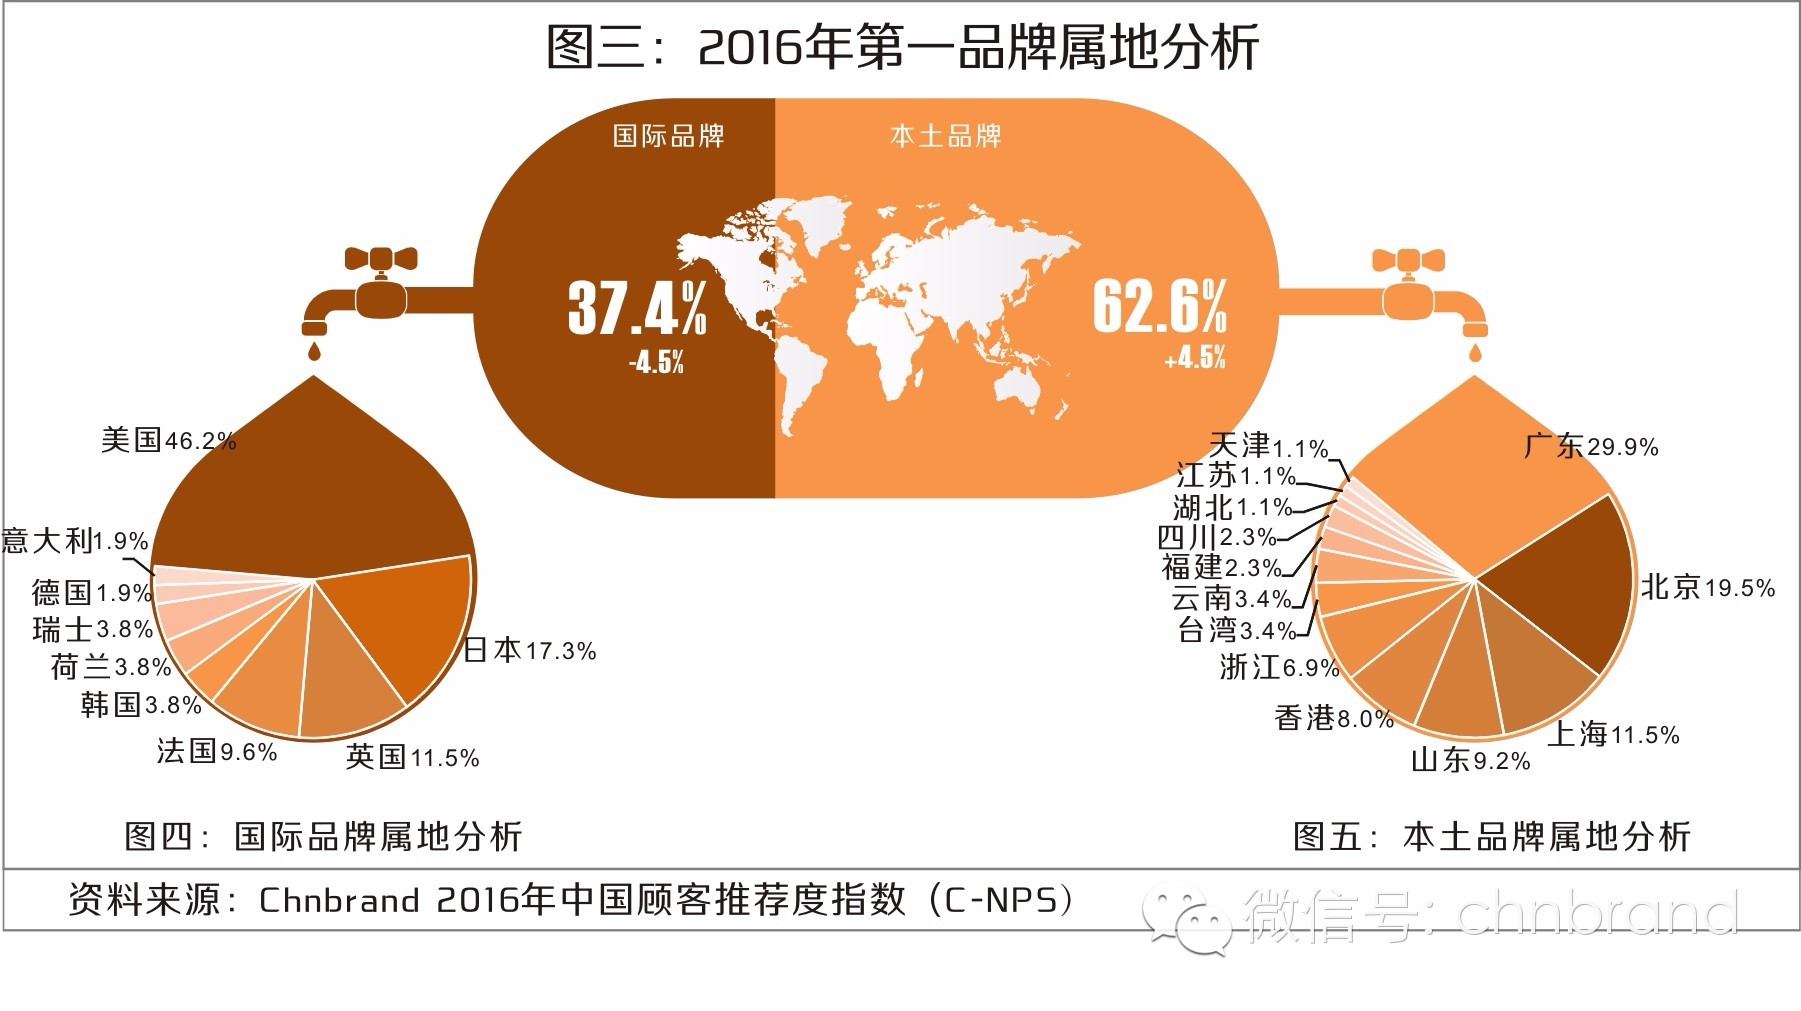 2016中国顾客推荐度指数C-NPS研究成果权威